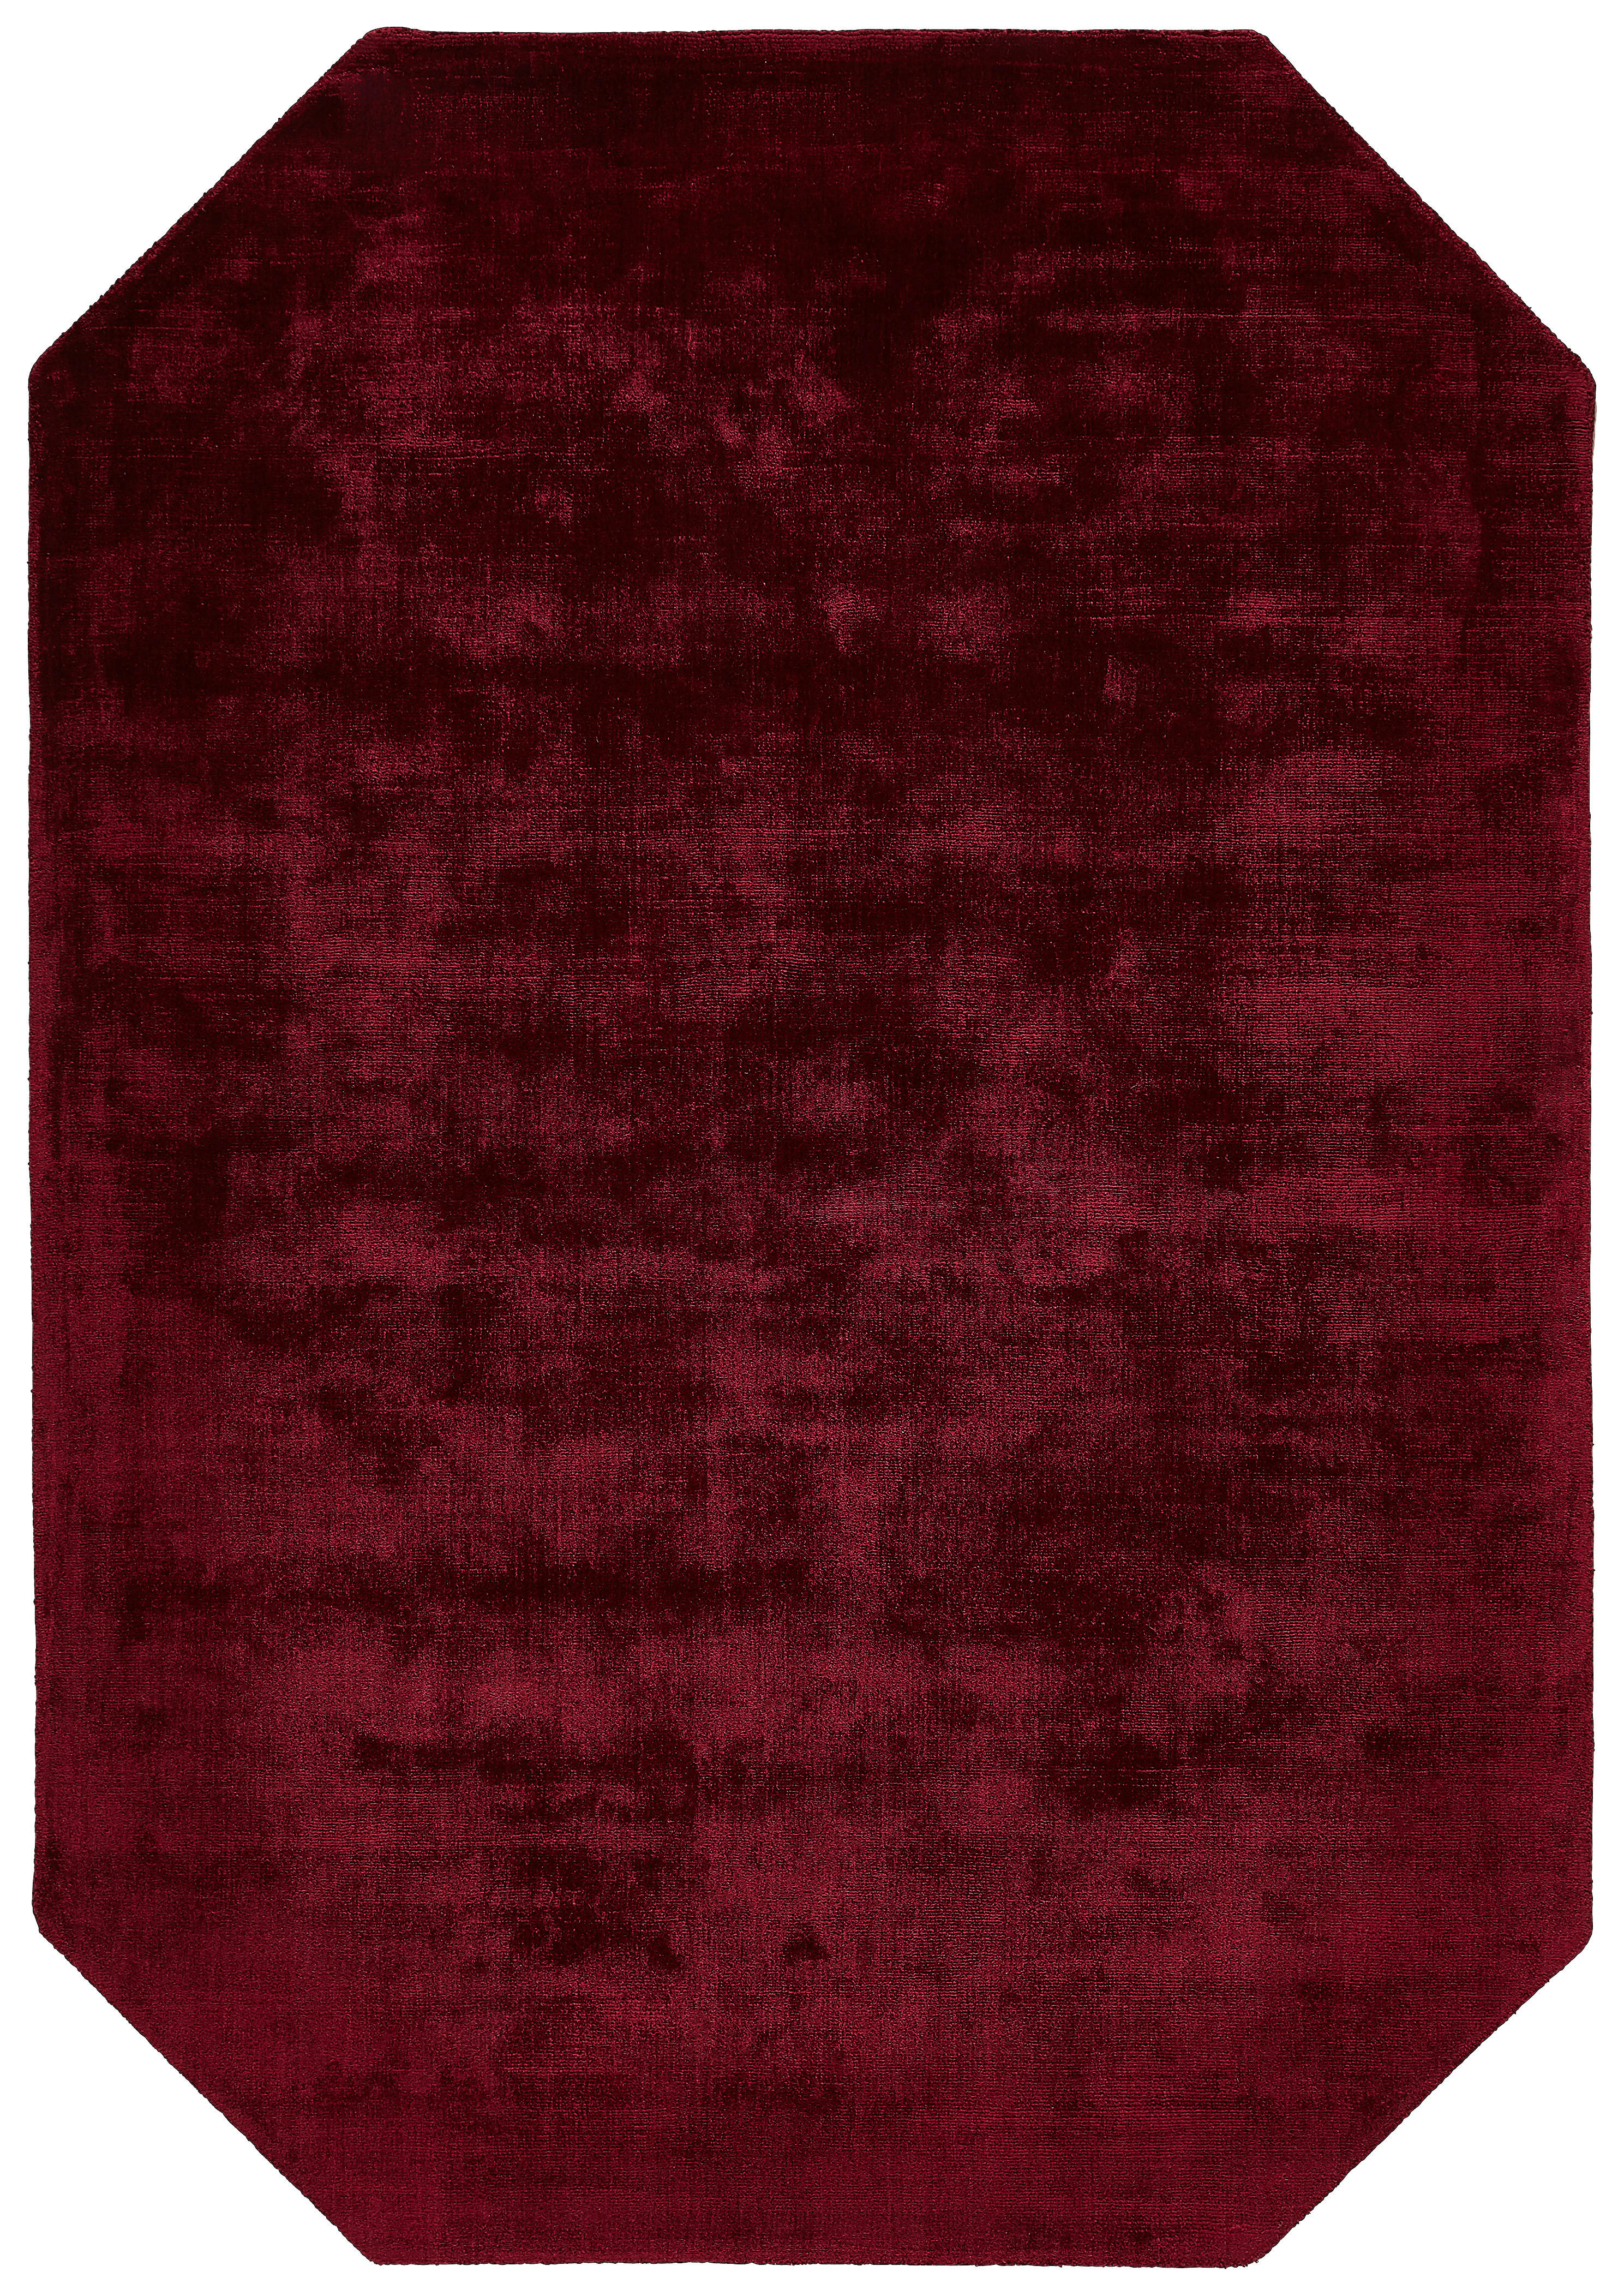 Novel TKANÝ KOBEREC, 120/180 cm, bordeaux - bordeaux - textil